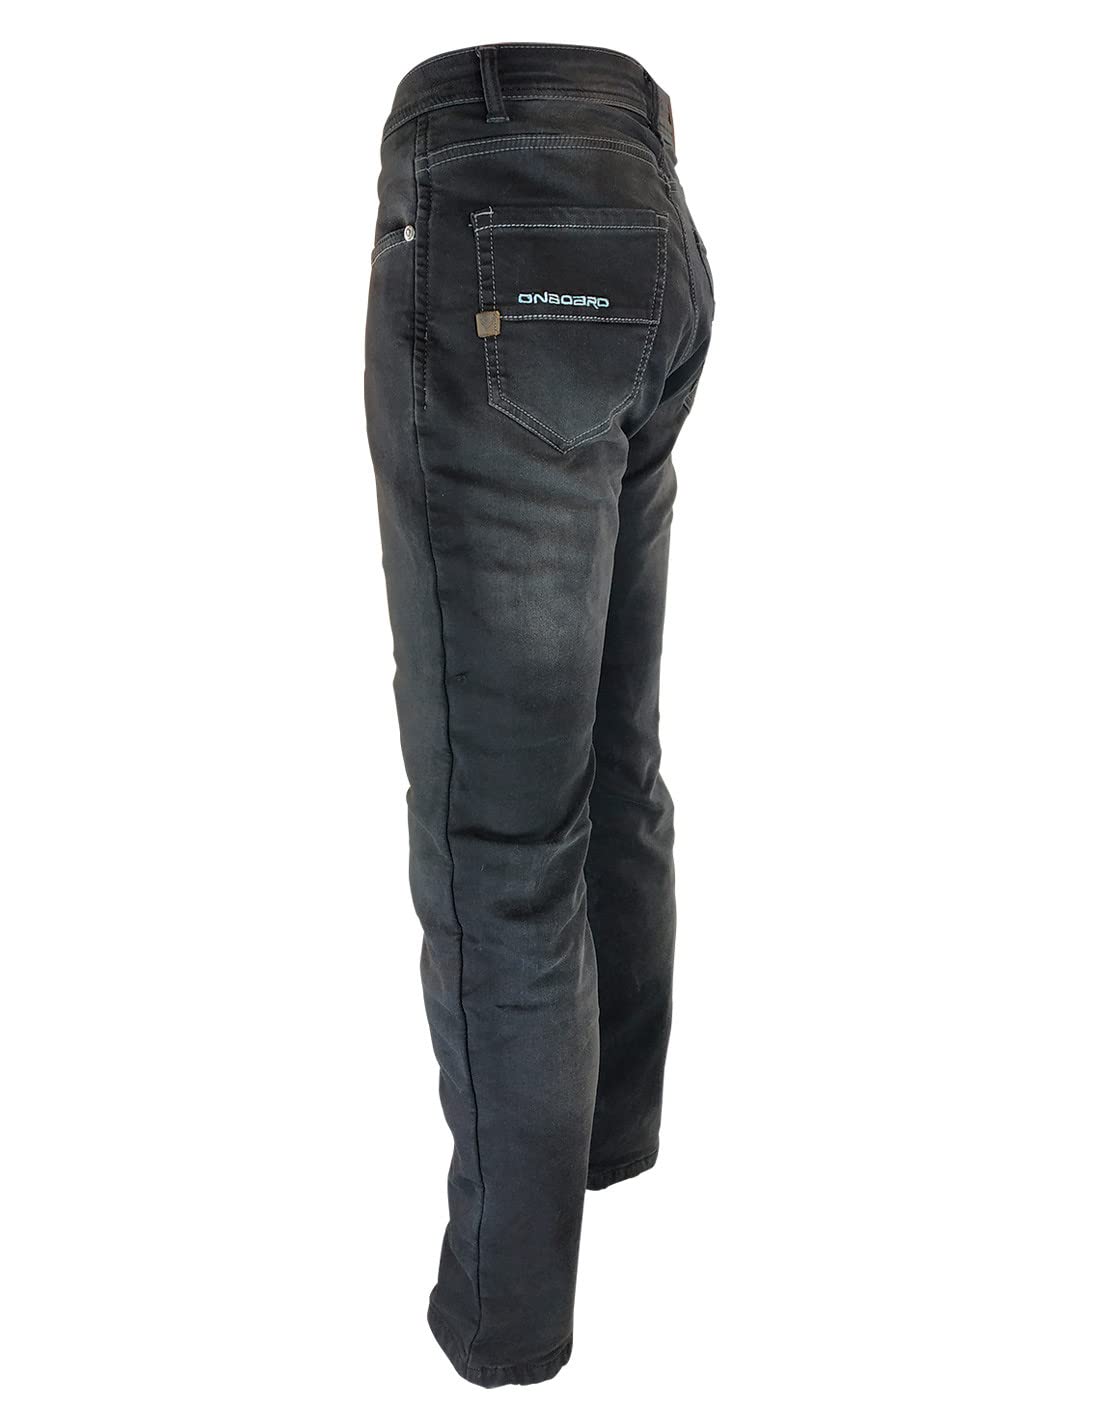 ON BOARD Concept Jeanshose mit Protektoren, Herren, 29, dunkelblau von ON BOARD